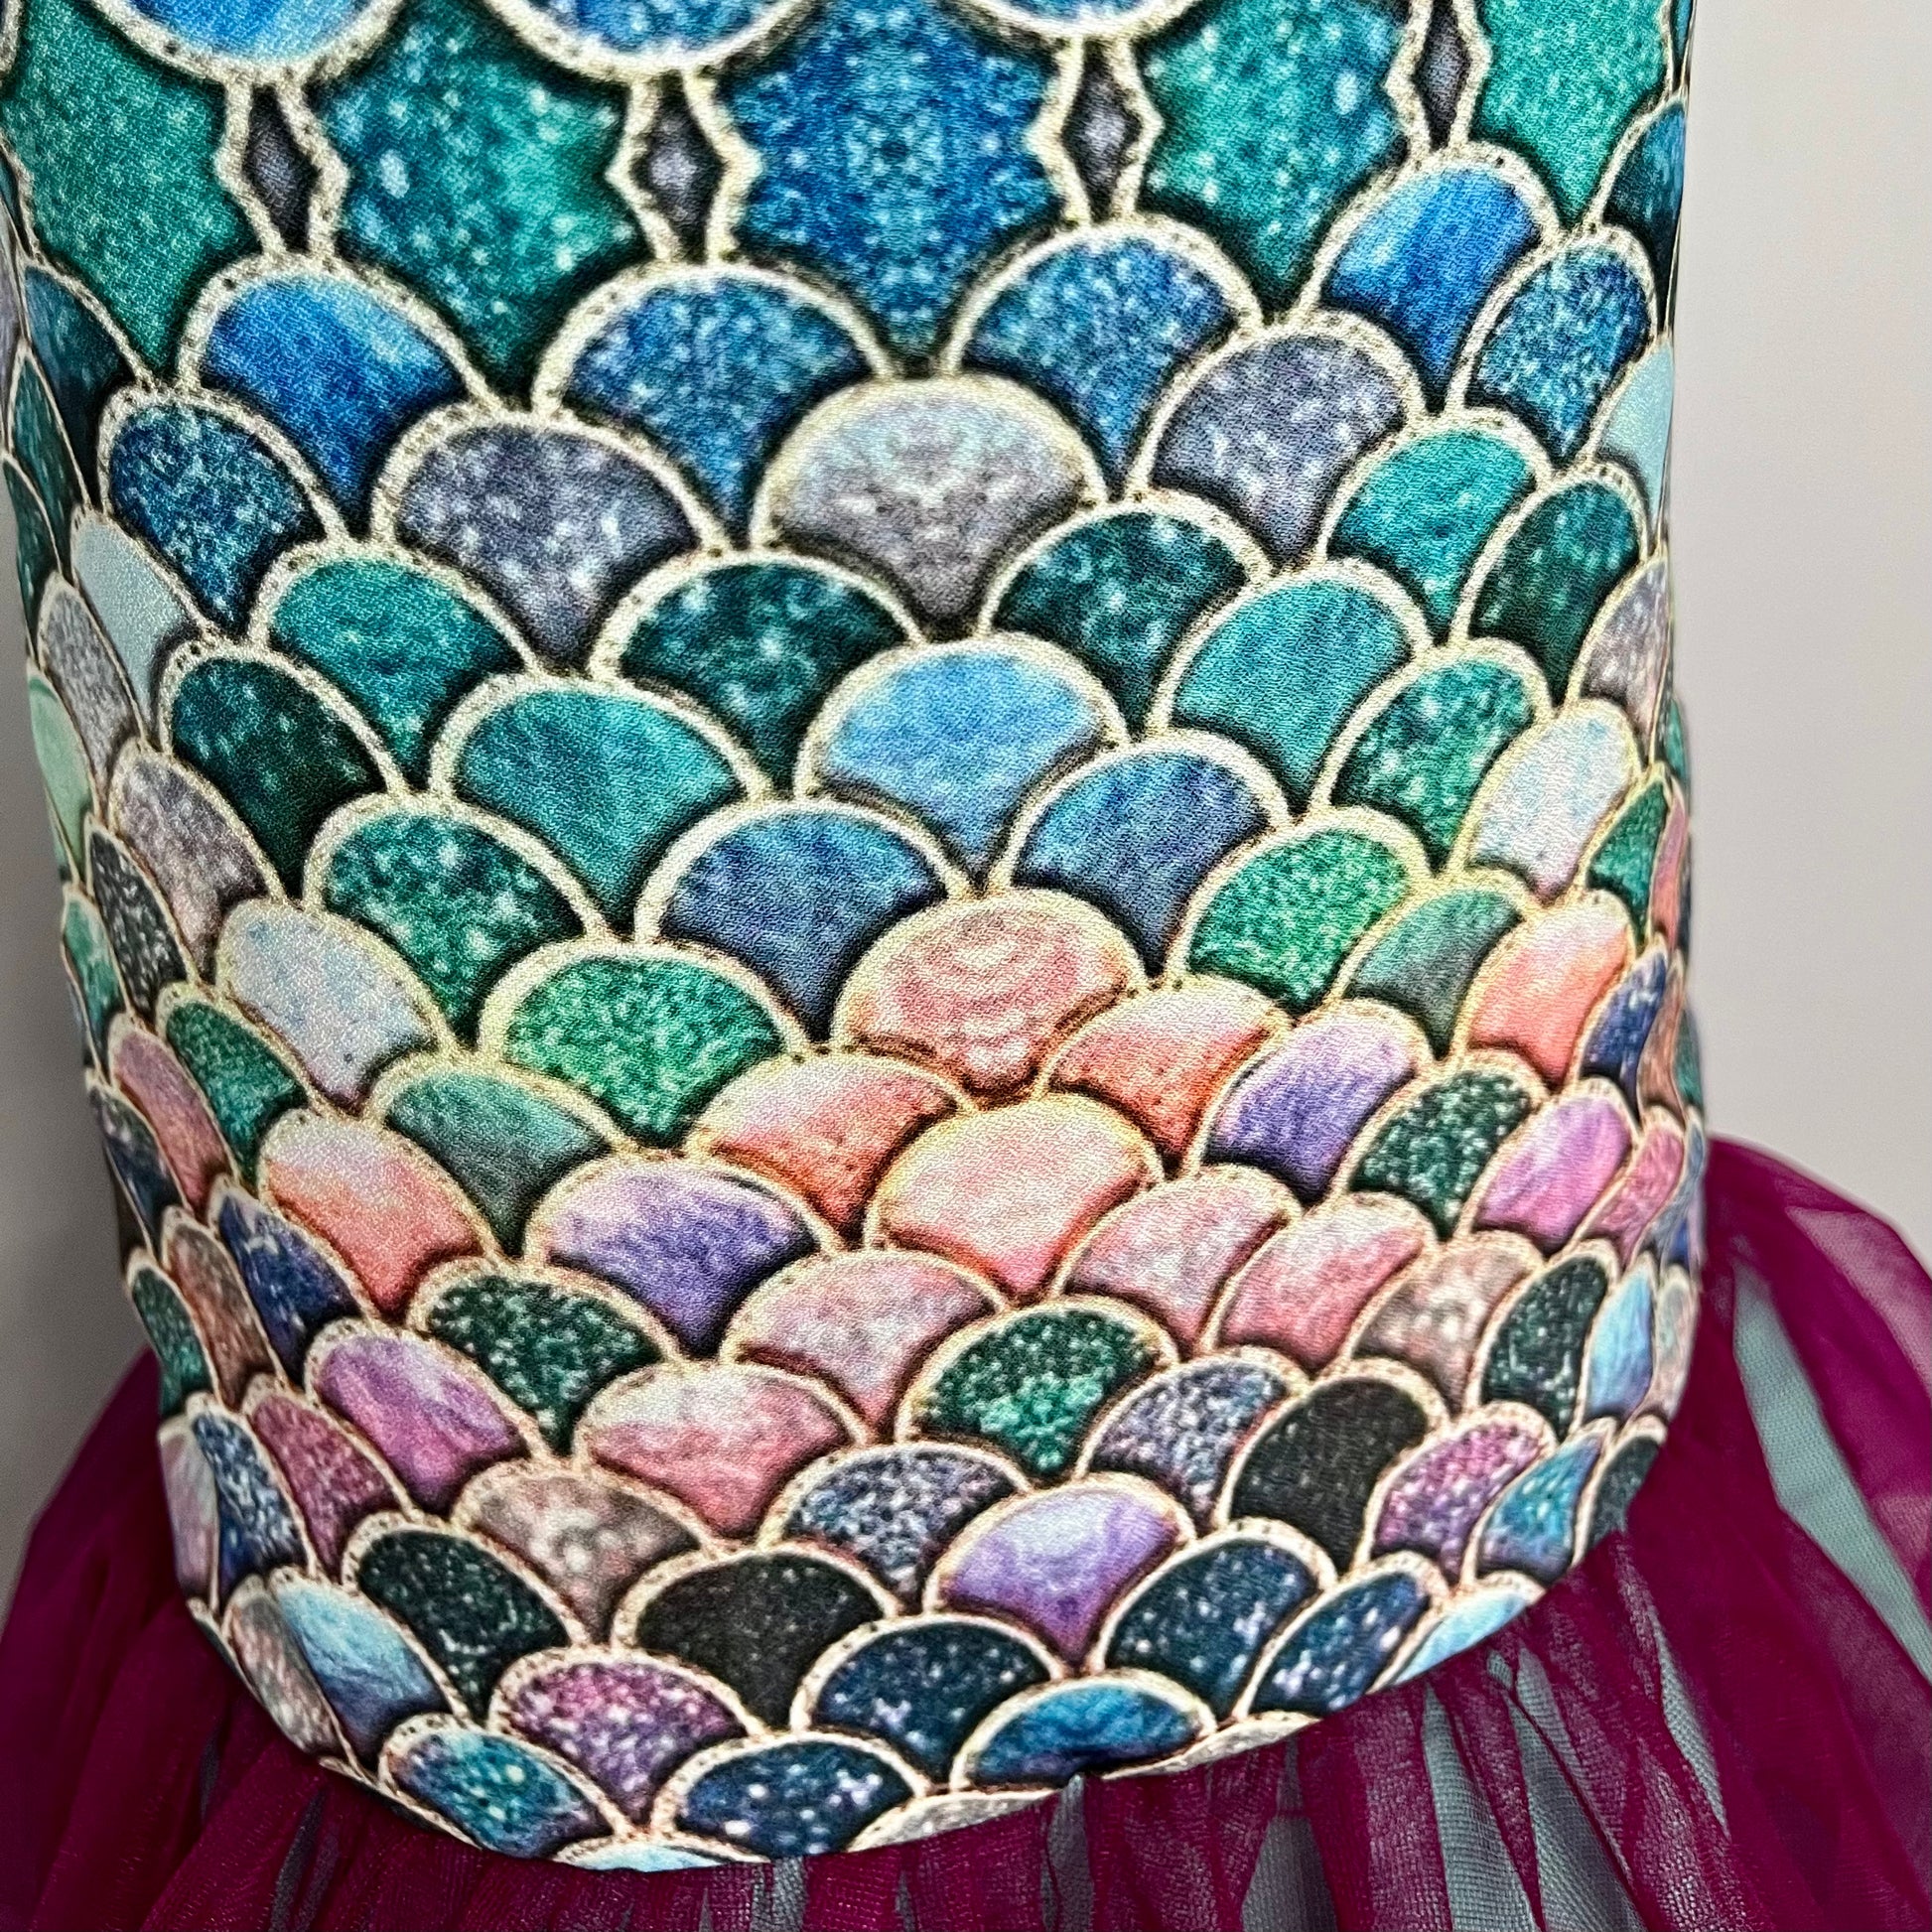 Mermaid Theme Designer Dress for Girls